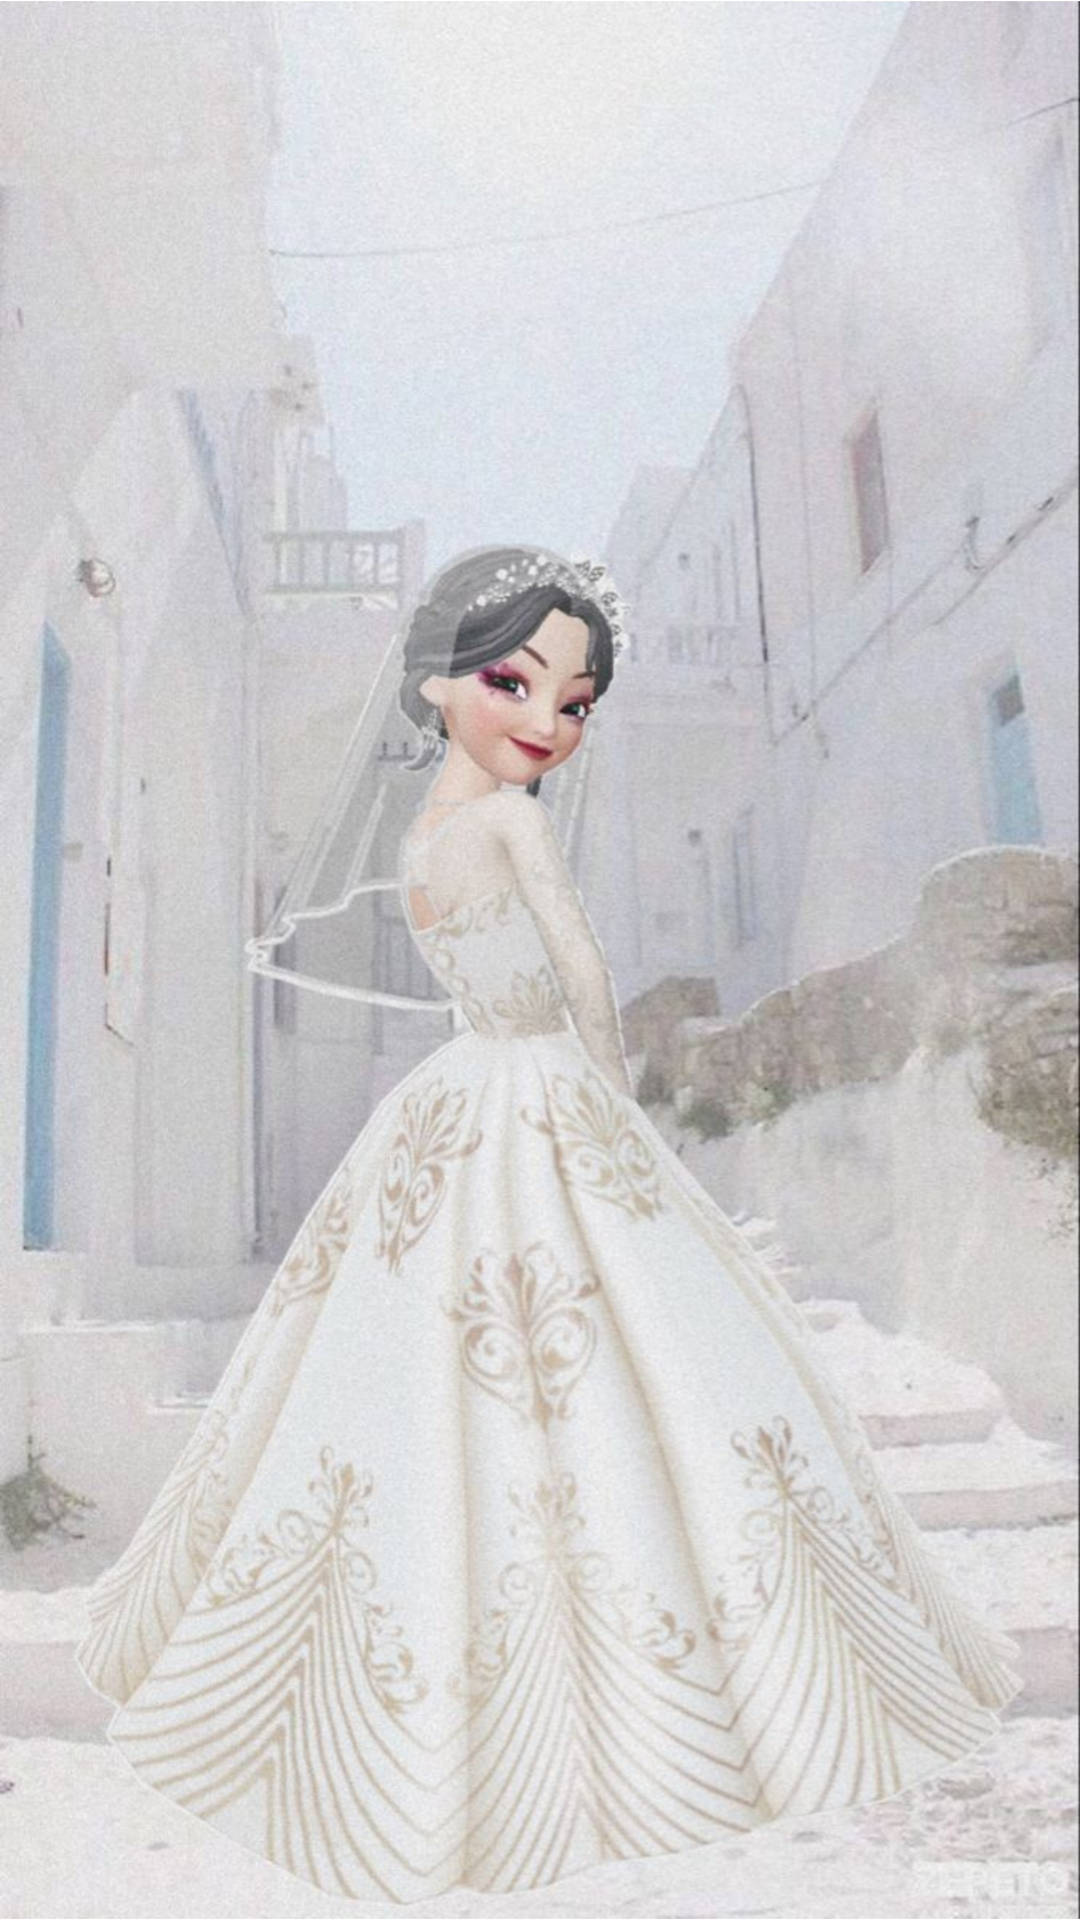 Zepeto Beautiful Bride Background